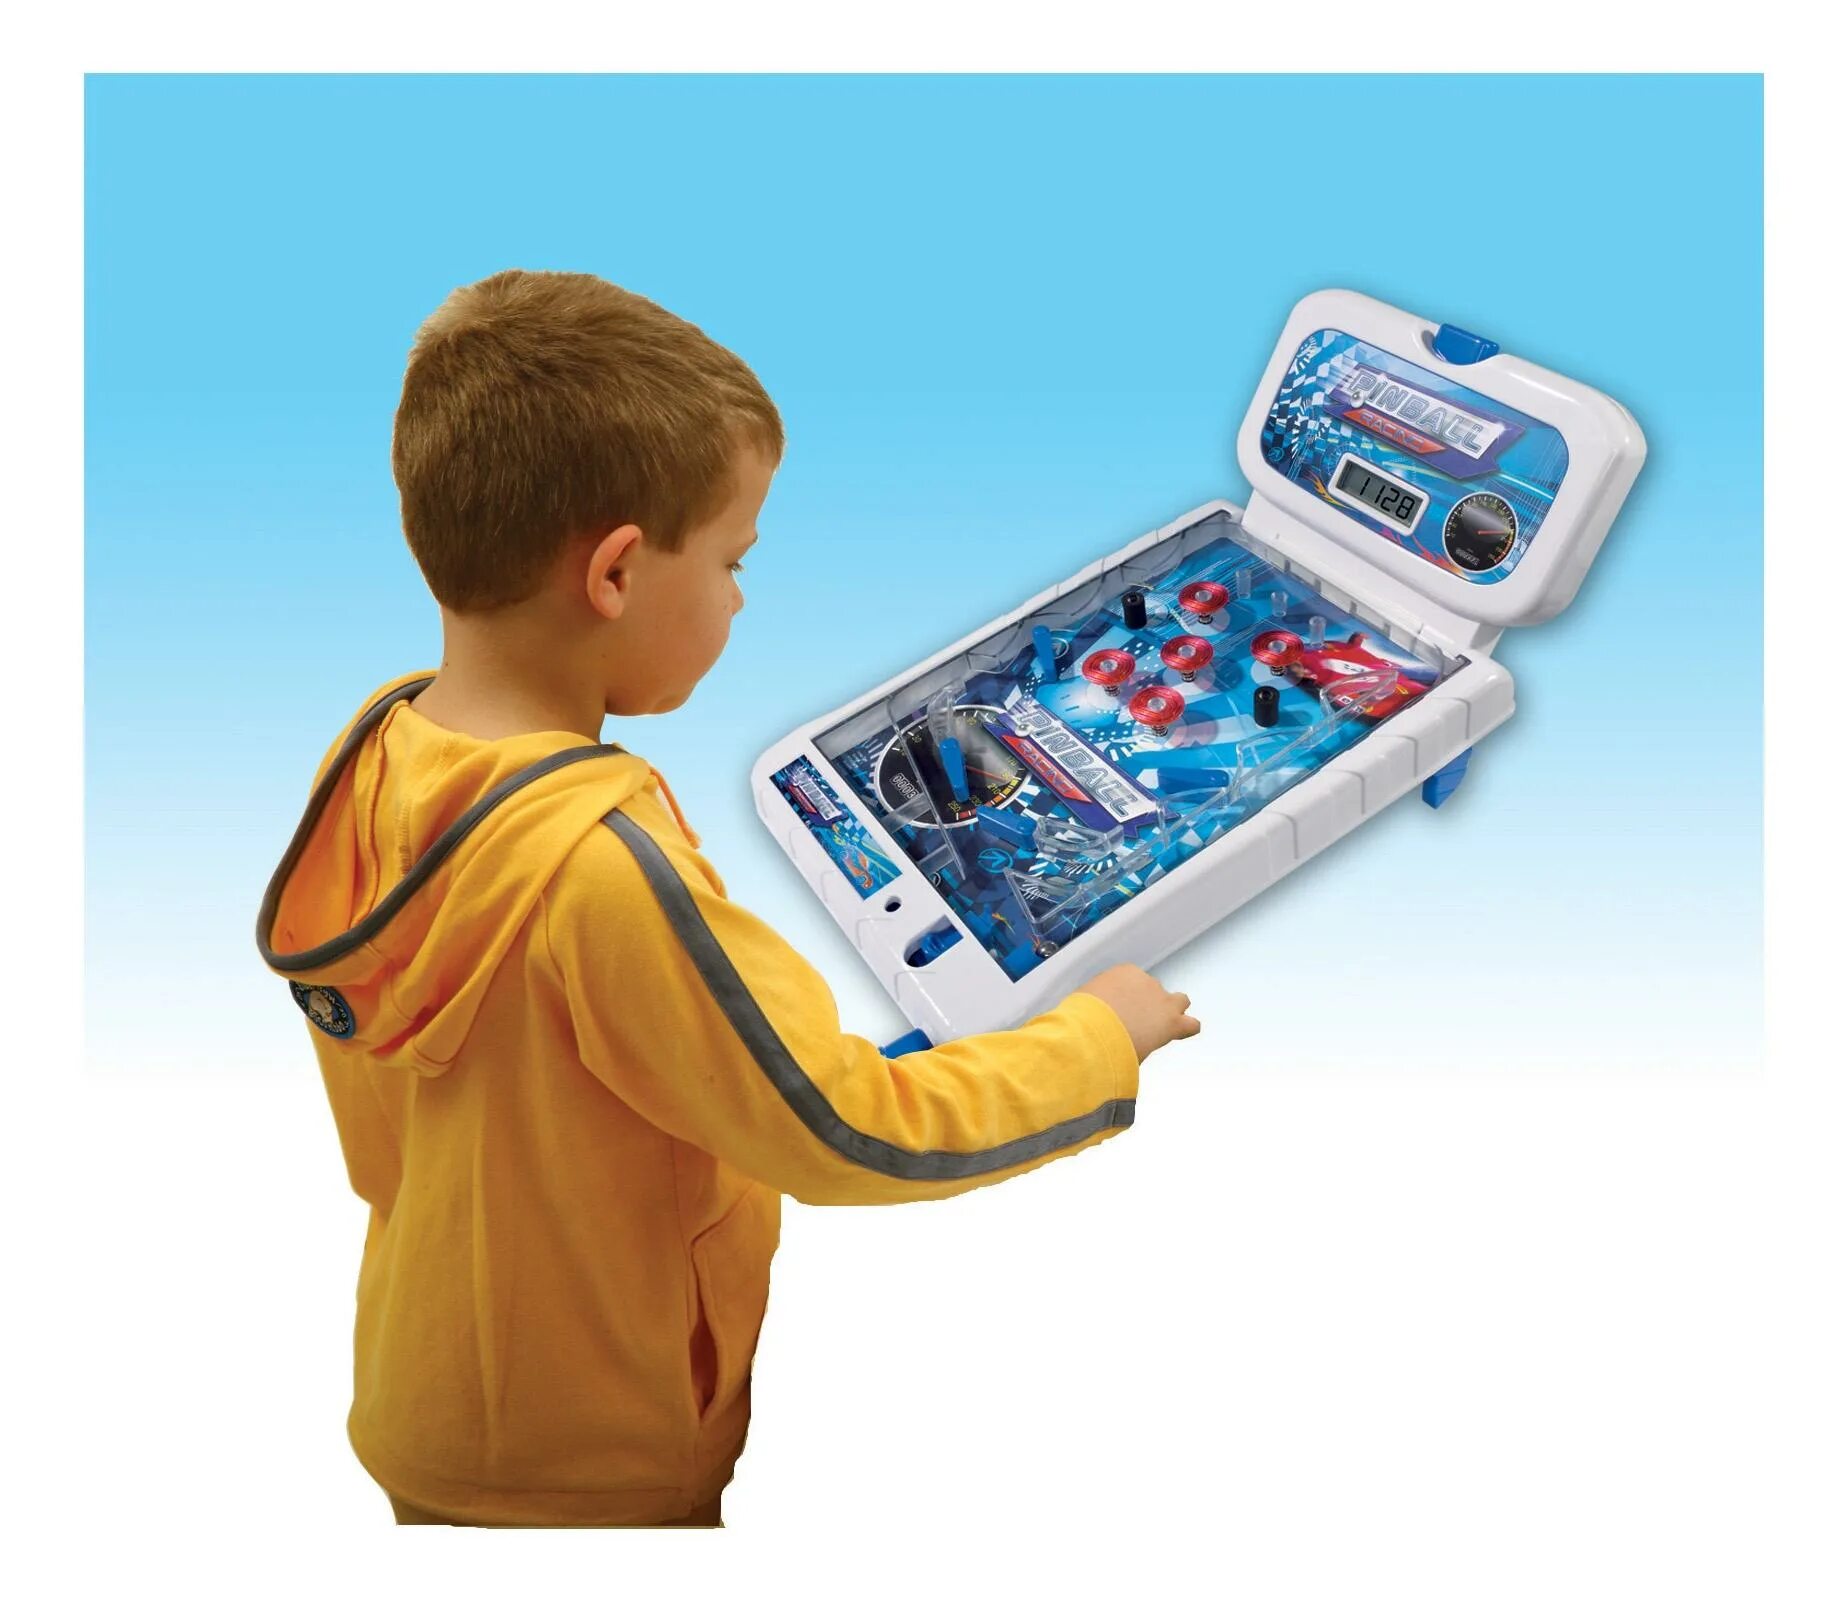 Пинбол Simba электрический. Simba пинбол электрический 3d. Интересные игрушки для мальчиков. Необычные игрушки для мальчиков.